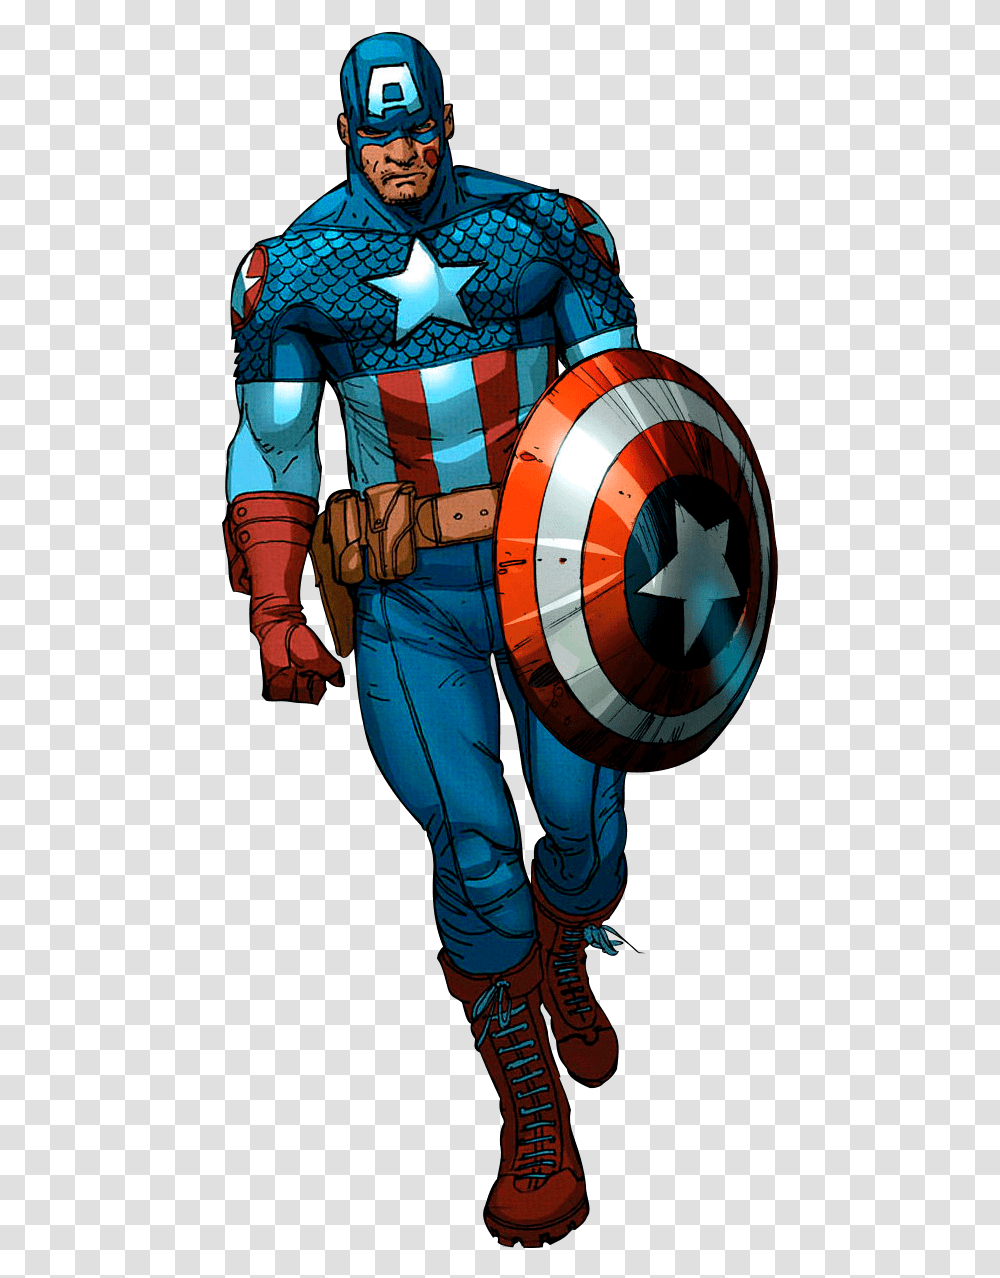 Ultimate Captain America Ultimate Captain America Vs Ultimate Captain America Concept Art, Person, Human, Helmet Transparent Png